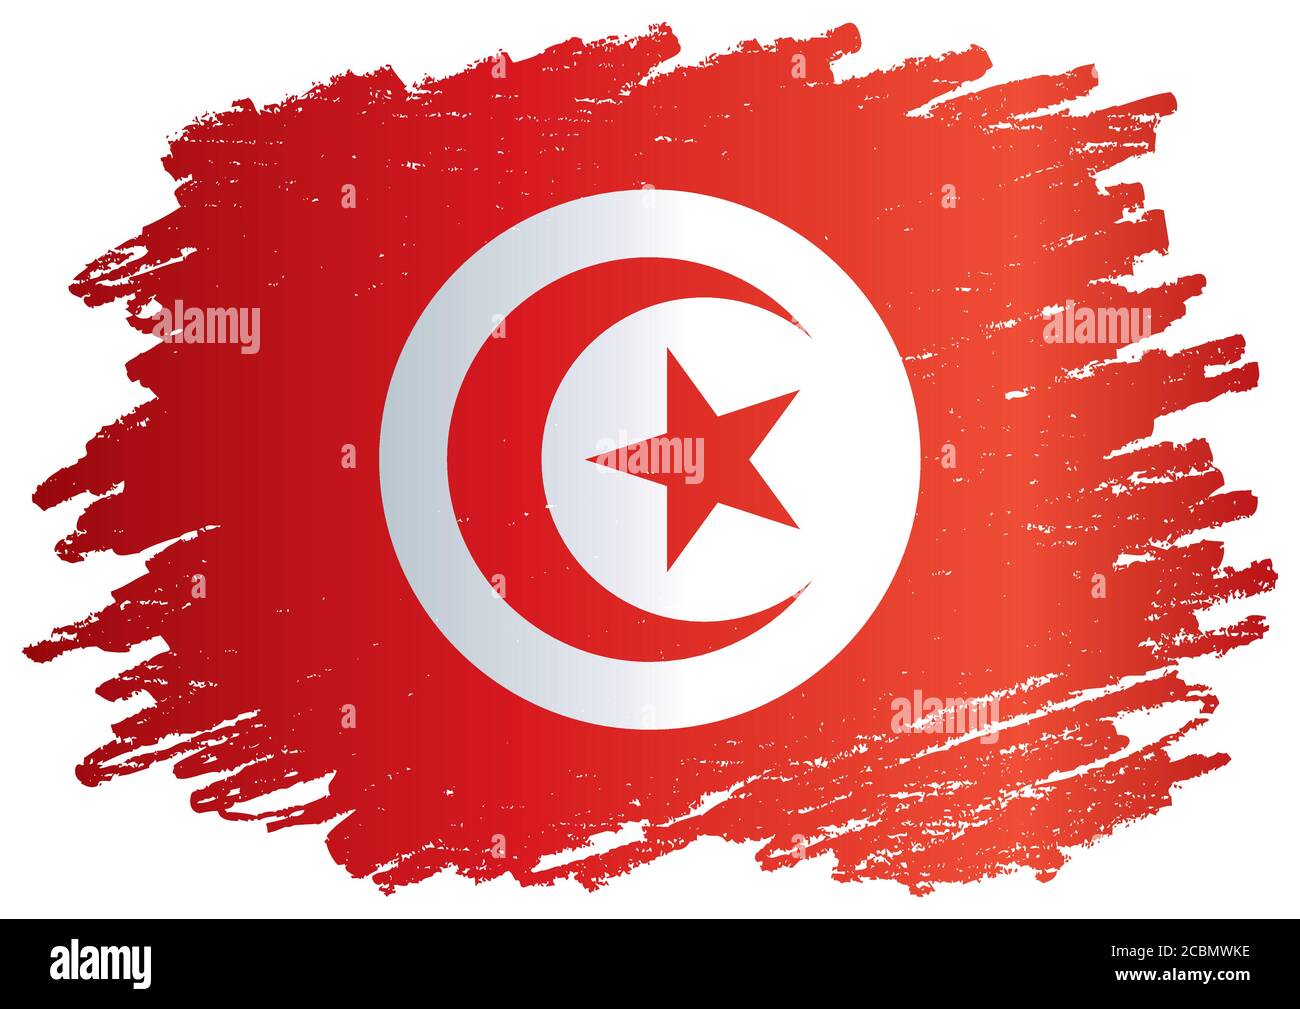 Bandera de Túnez, República de Túnez. Plantilla para el diseño de premios, un documento oficial con la bandera de Túnez. Ilustración vectorial brillante y colorida. Ilustración del Vector